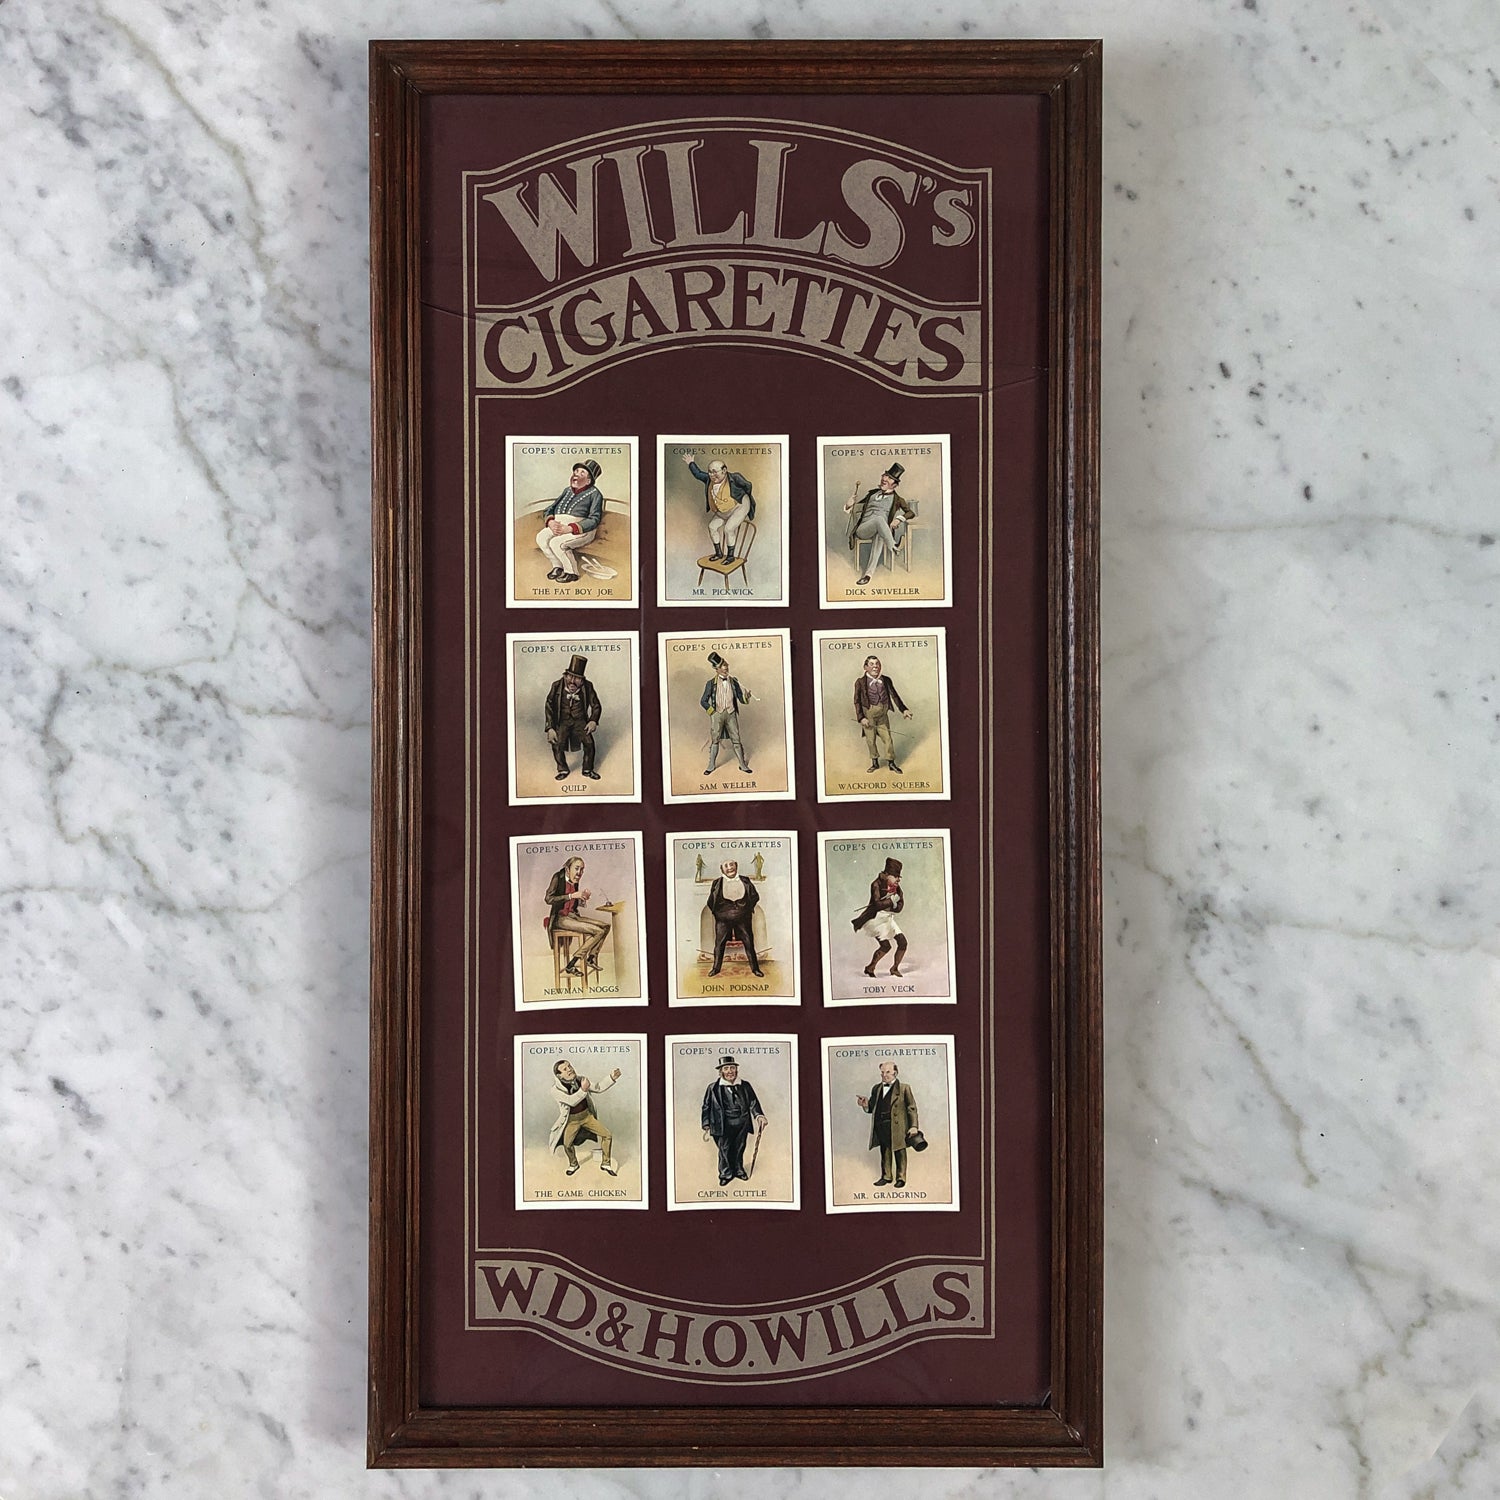 Antique Wills's British Cigarettes Art Circa 1900